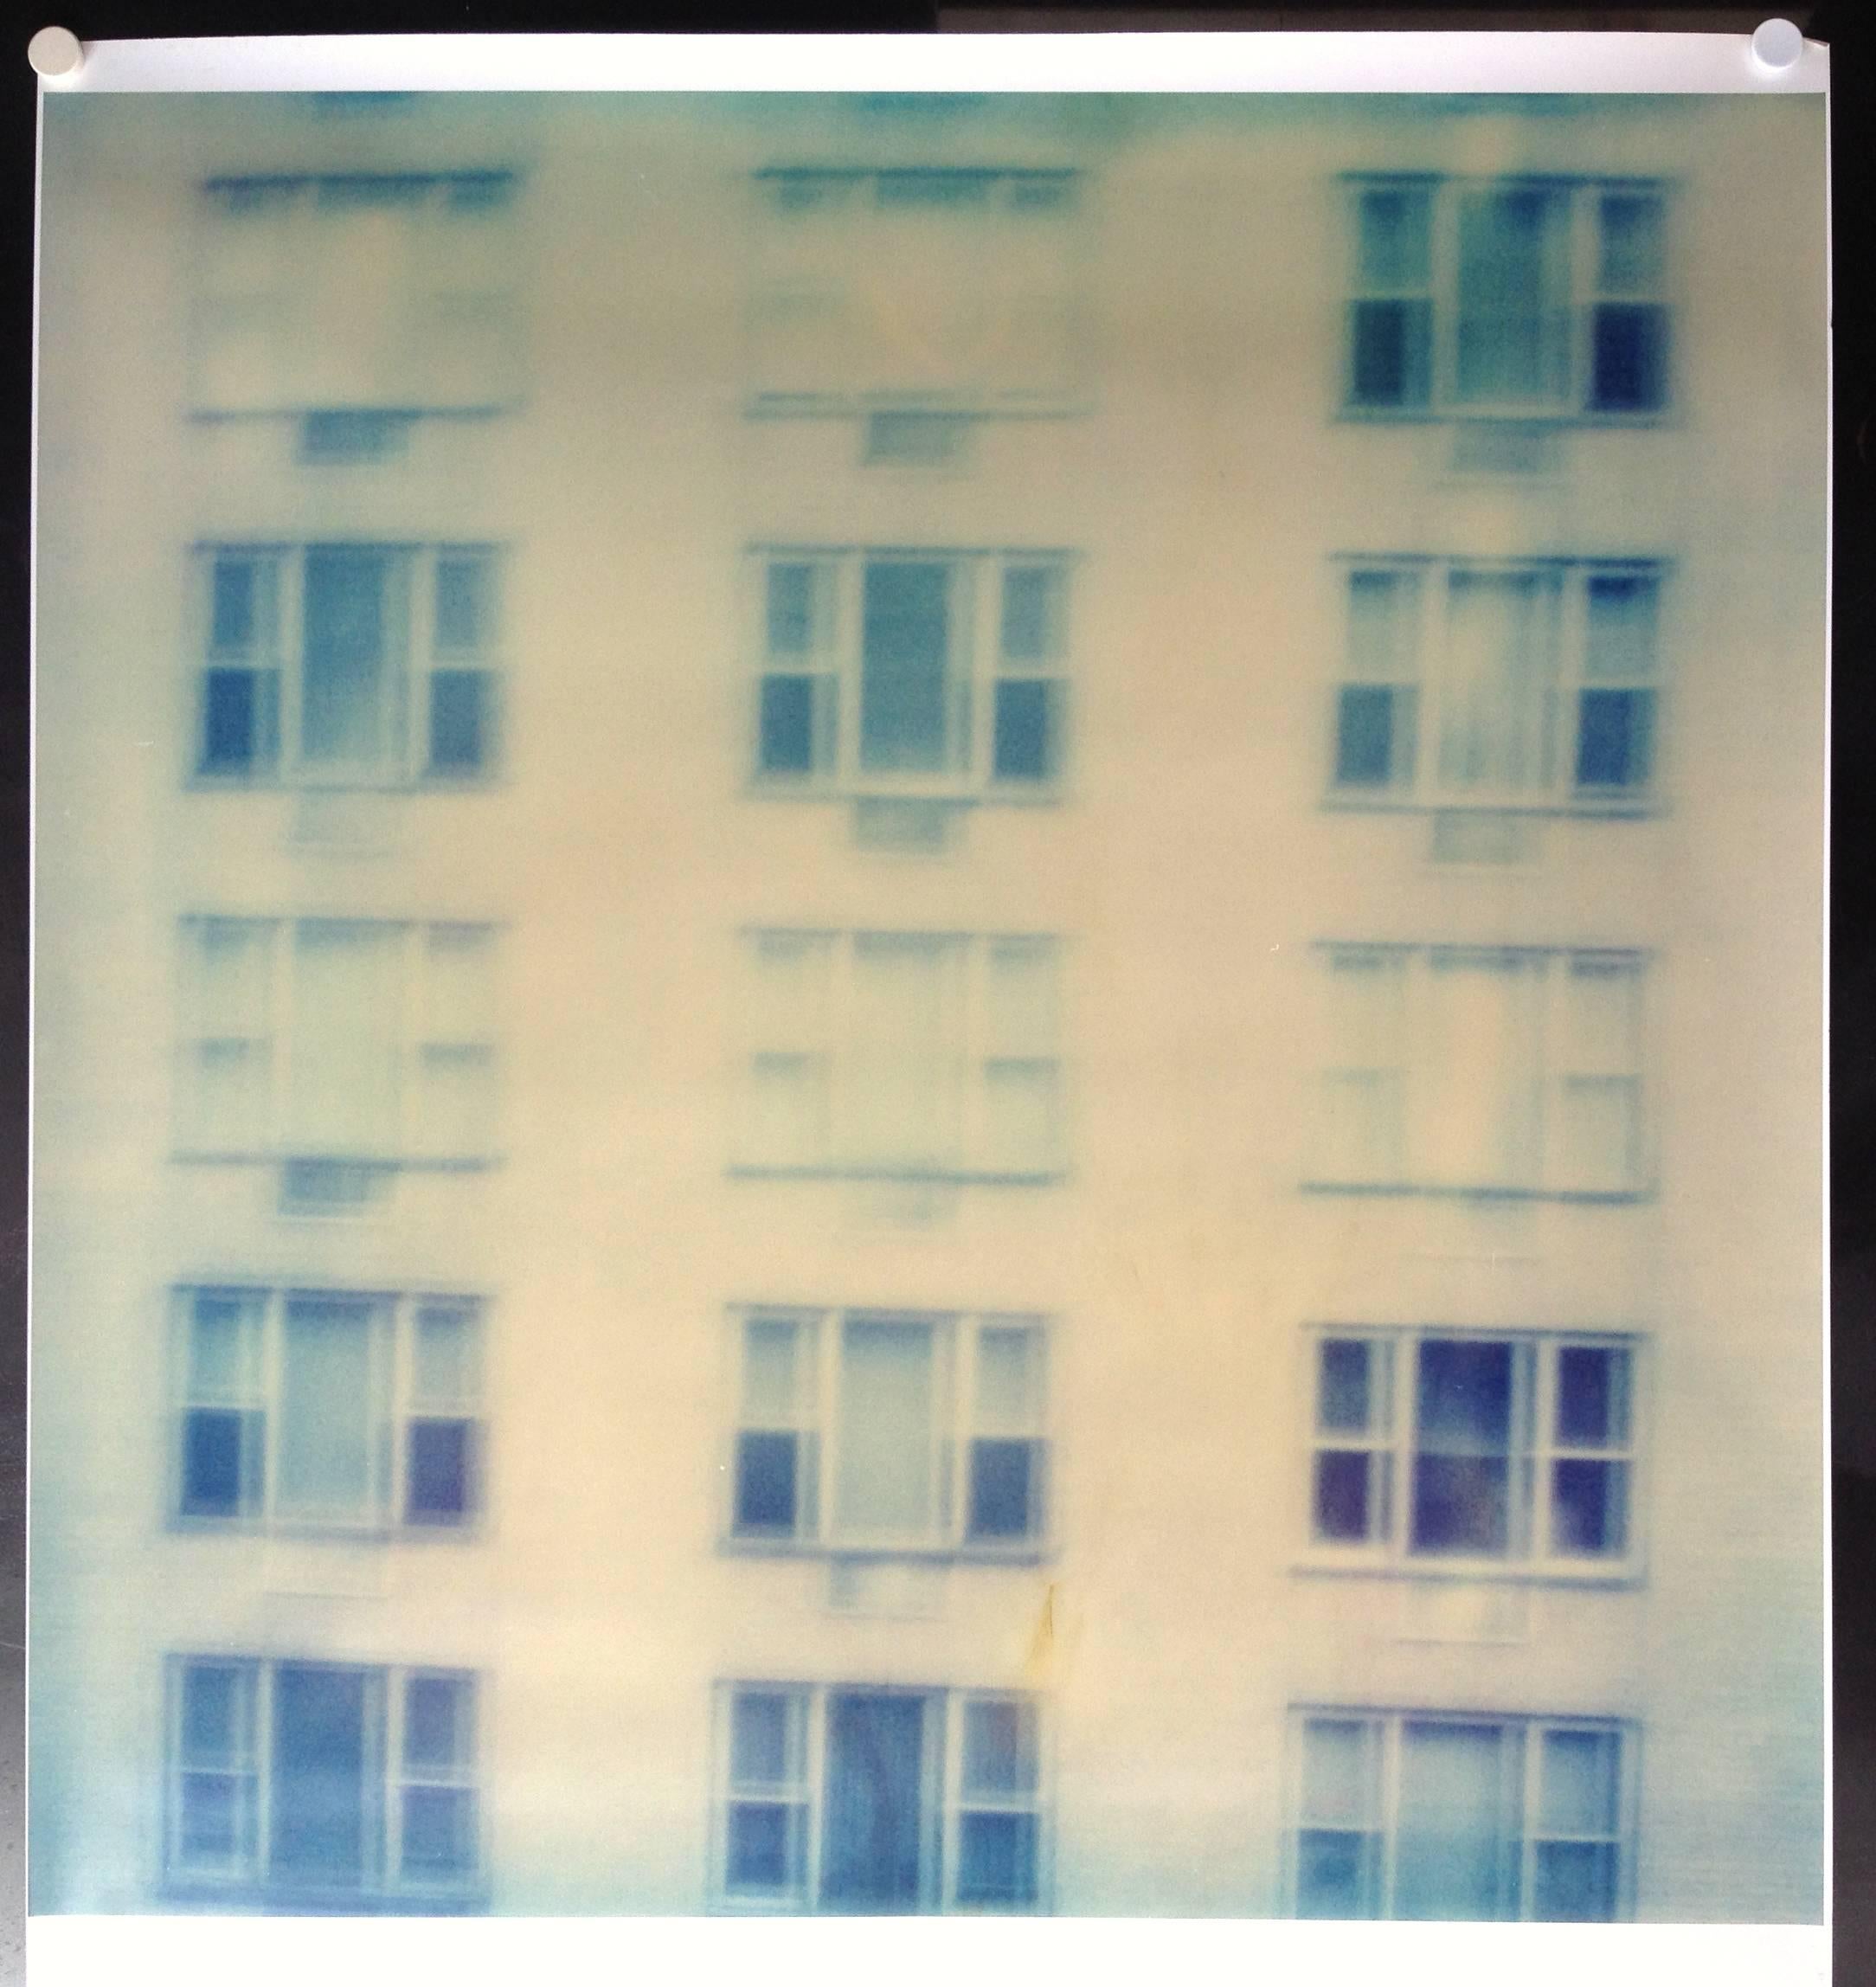 Across (Strange Love) - analogique, basé sur le Polaroid am original - Photograph de Stefanie Schneider